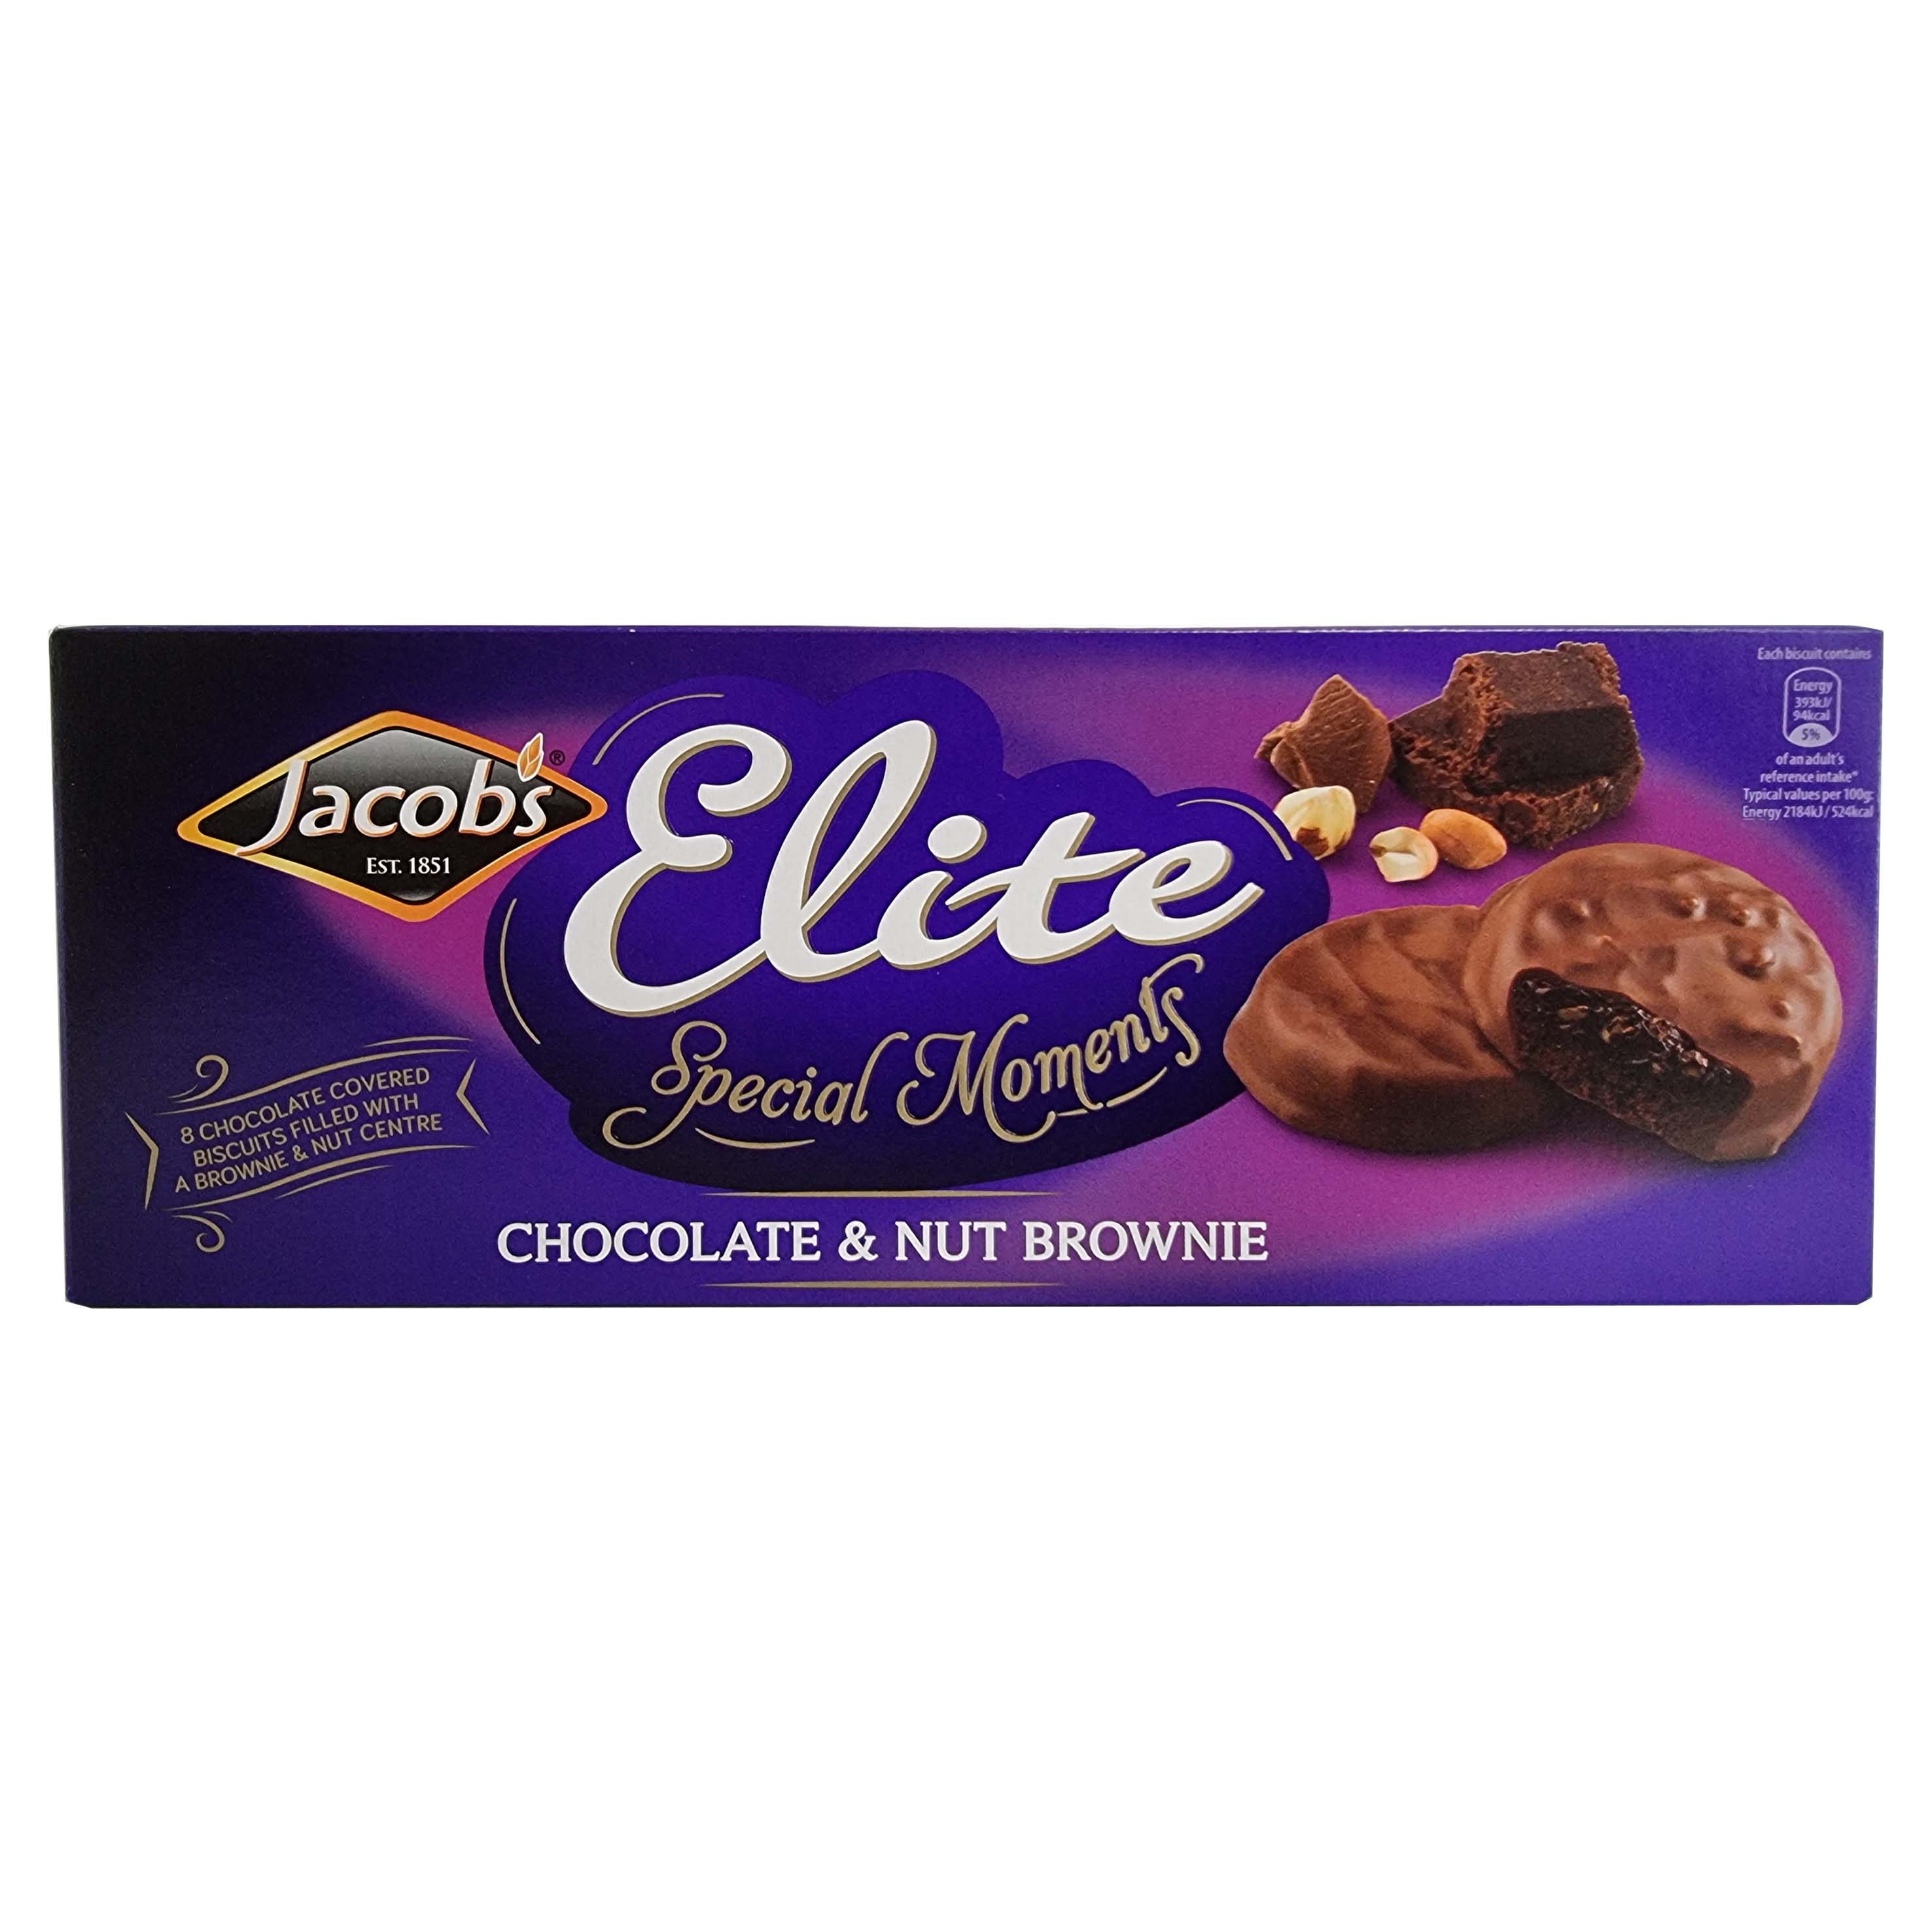 Jacobs galletas elite chocolate & nut brownie 145g